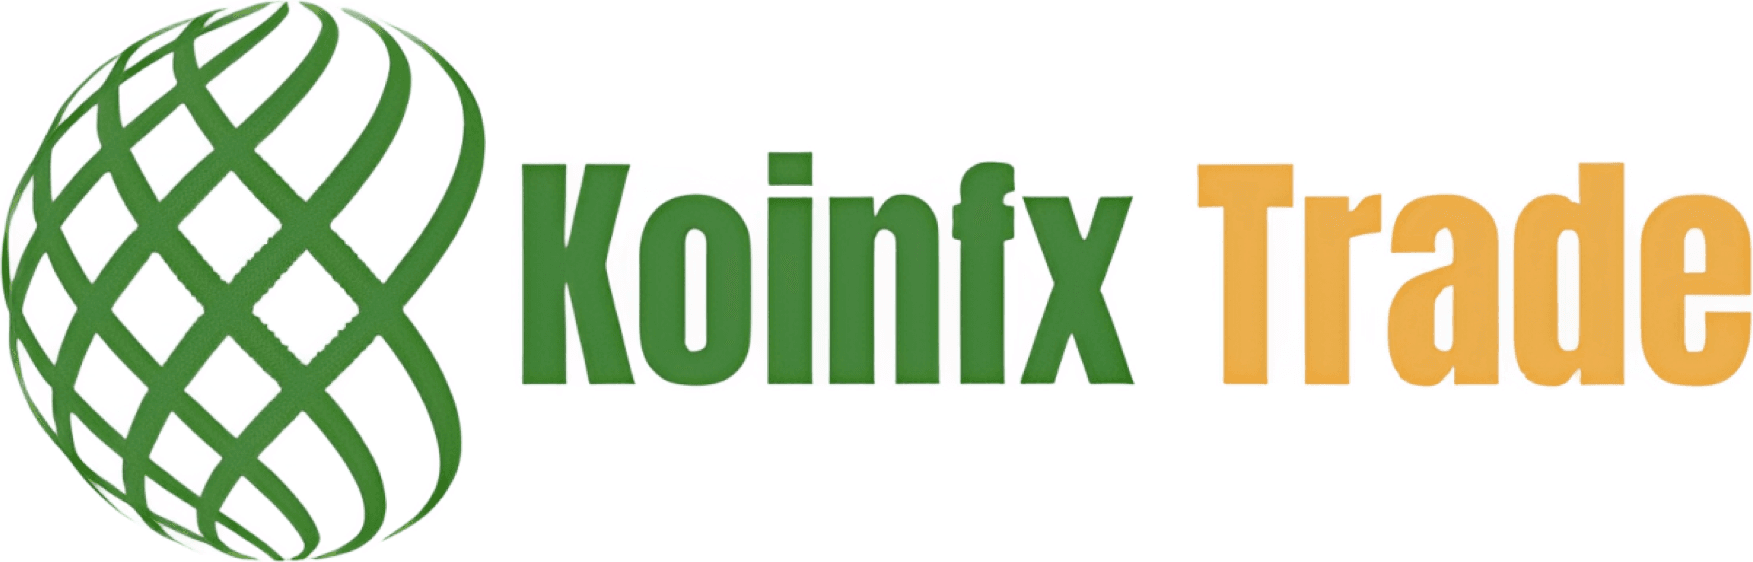 Koinfx Trade